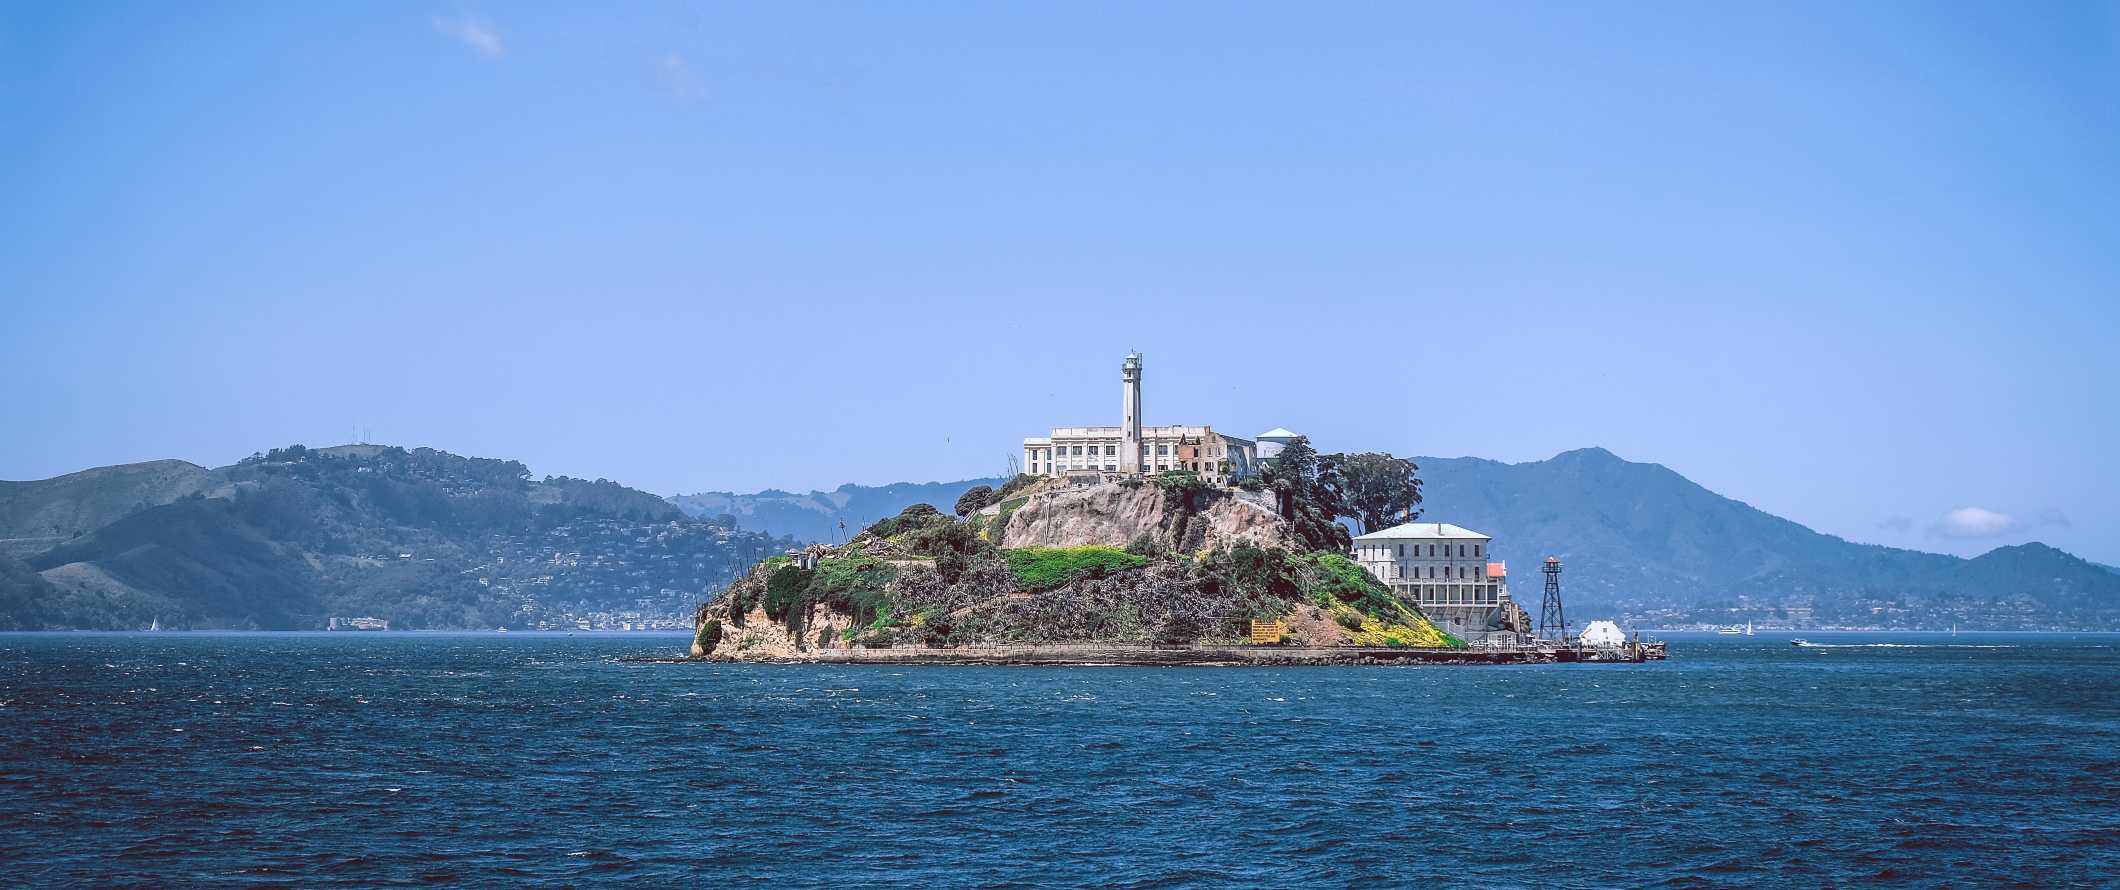 Vista de Alcatraz, uma antiga prisão em uma ilha rochosa em São Francisco, Califórnia.